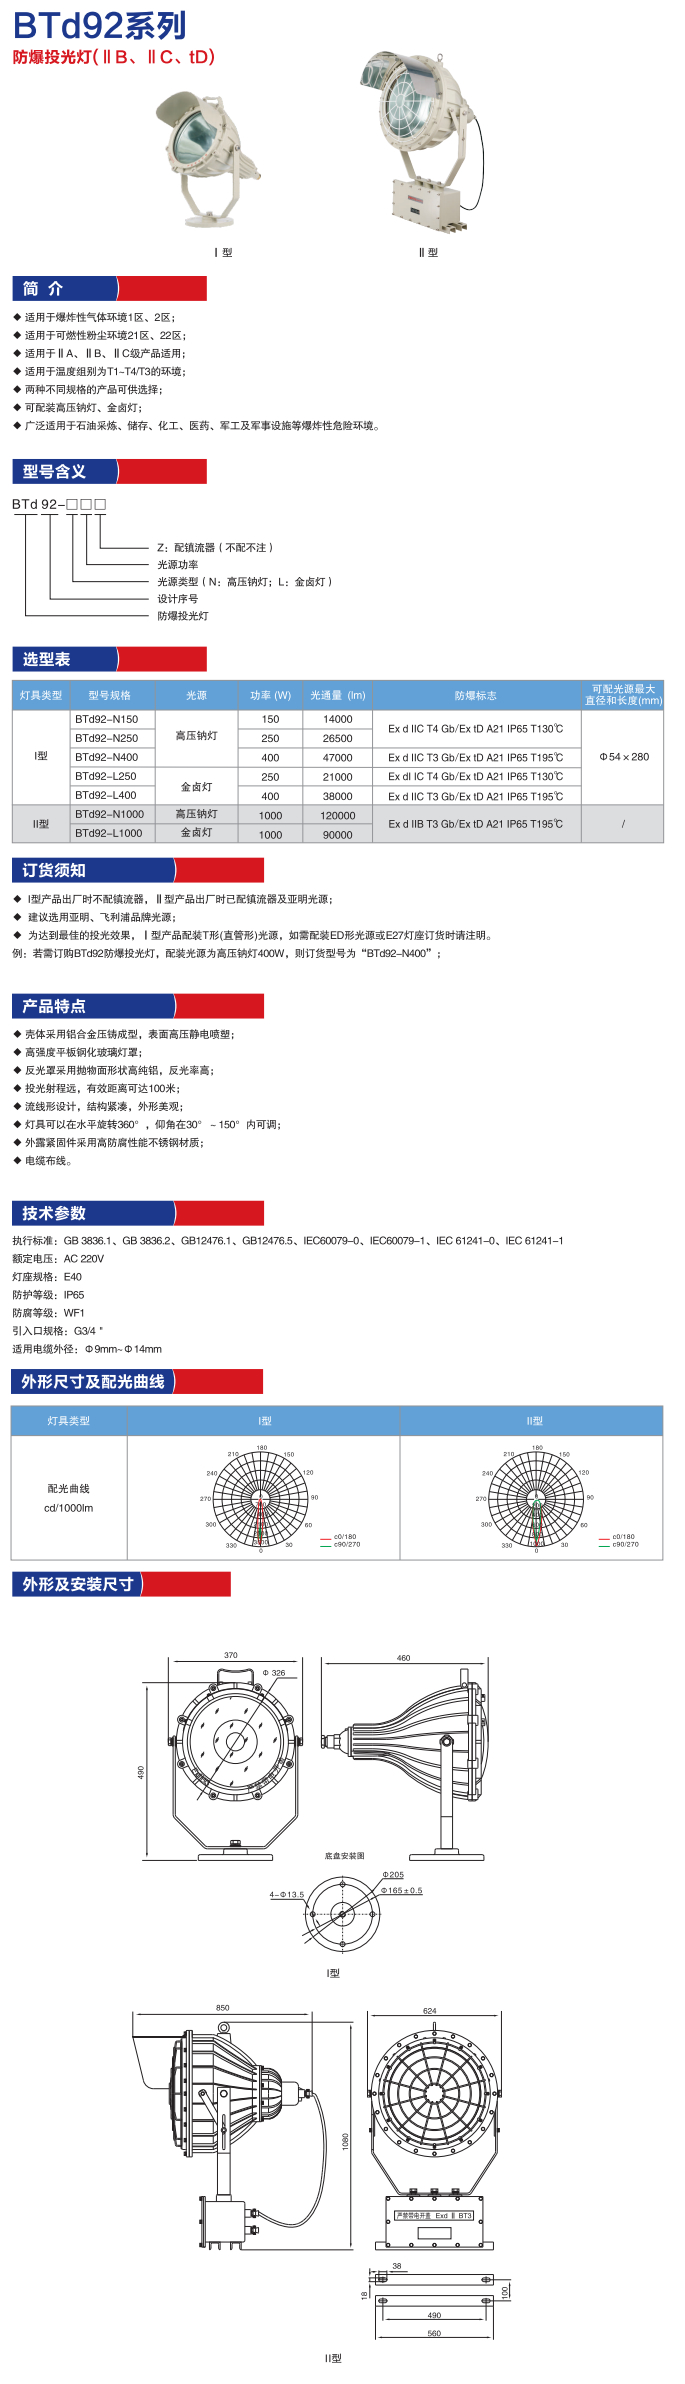 供应上海BTD-A防爆防爆大型投新黎明防爆电器厂家直销图片